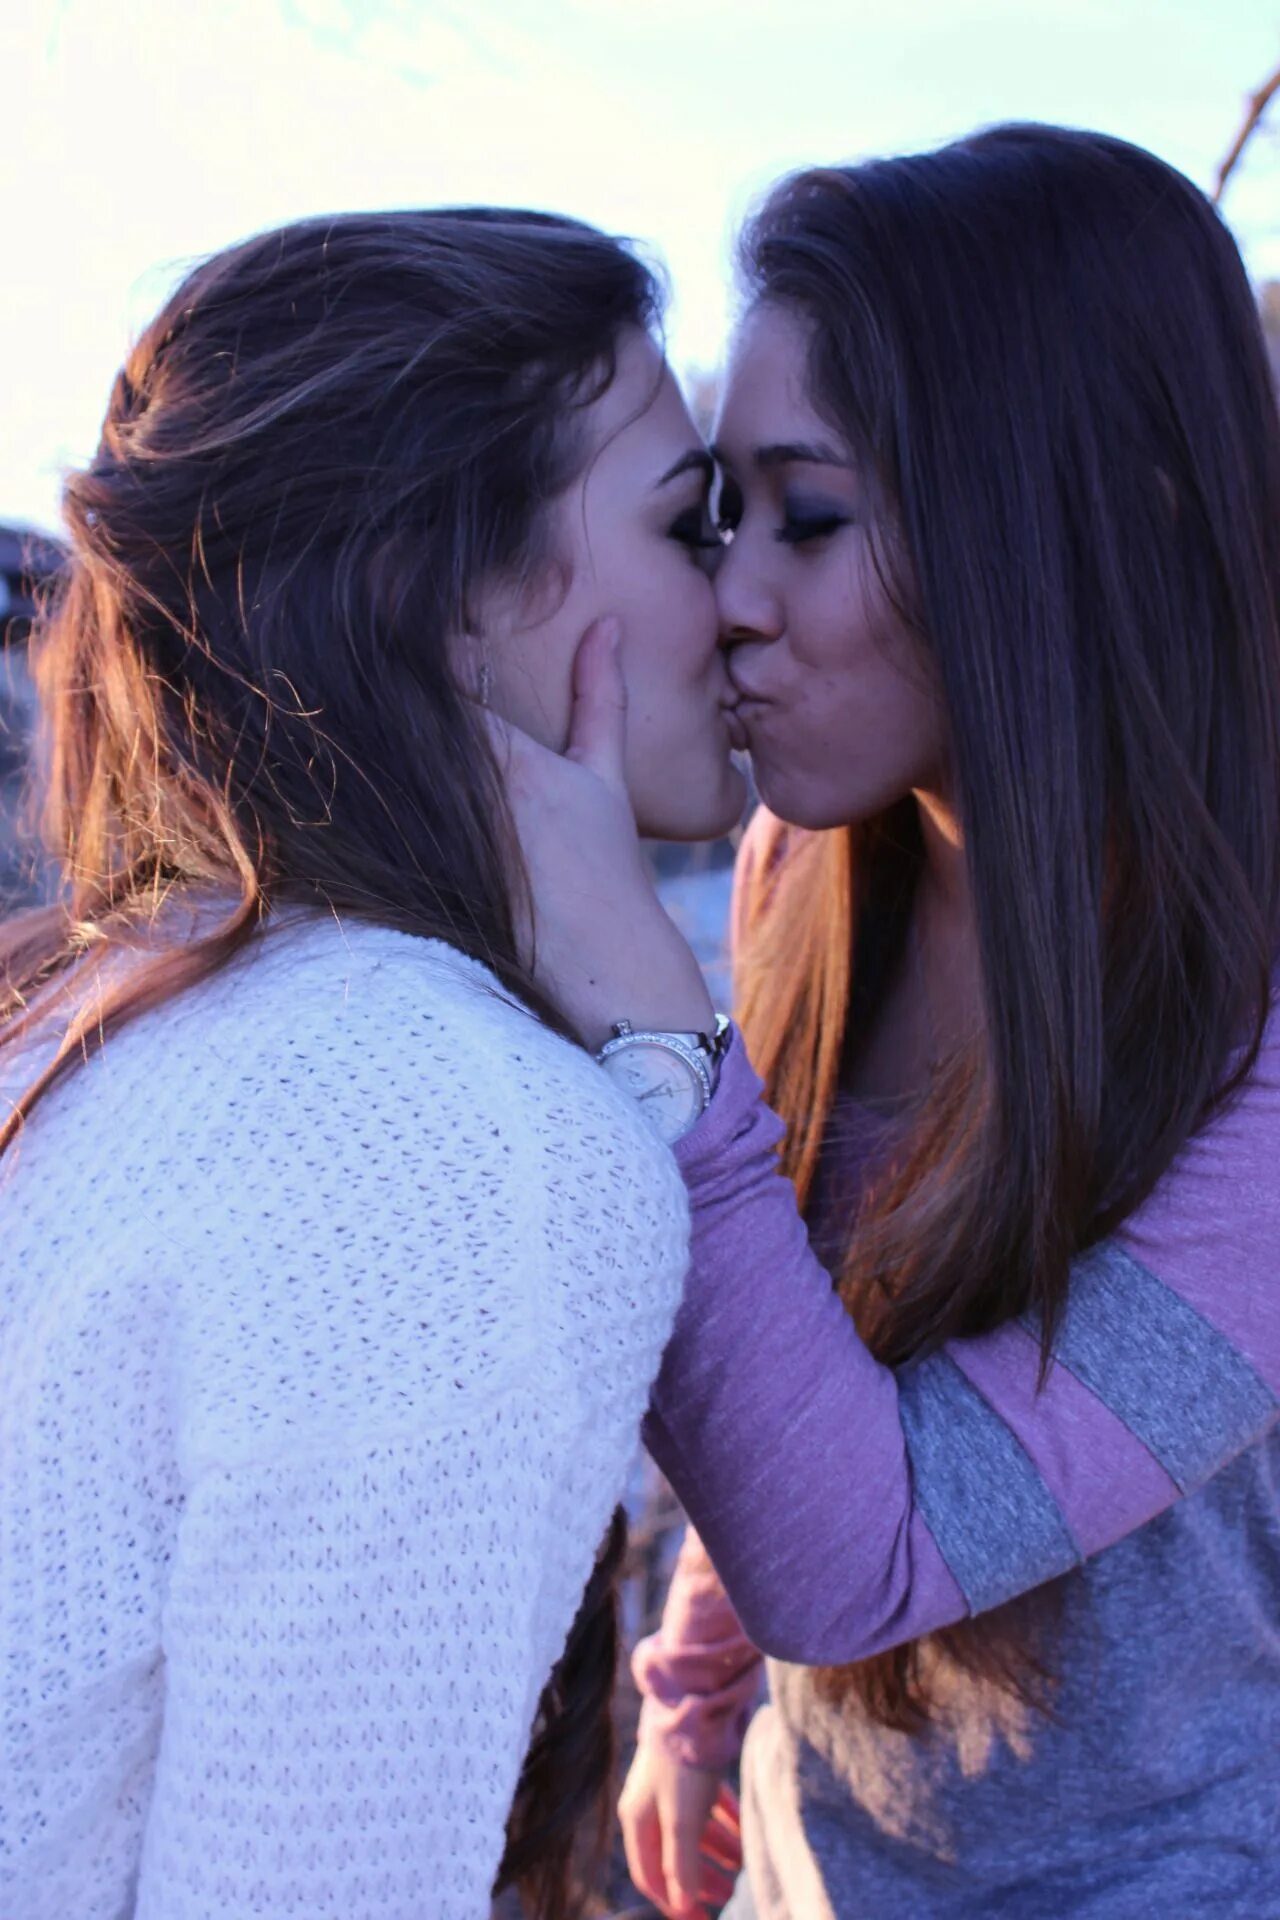 Two girlfriends Wallpaper. Pic lesbian Lebanese. Engage Kiss. Katrin ko lesbian photo. Moms girl lesbian